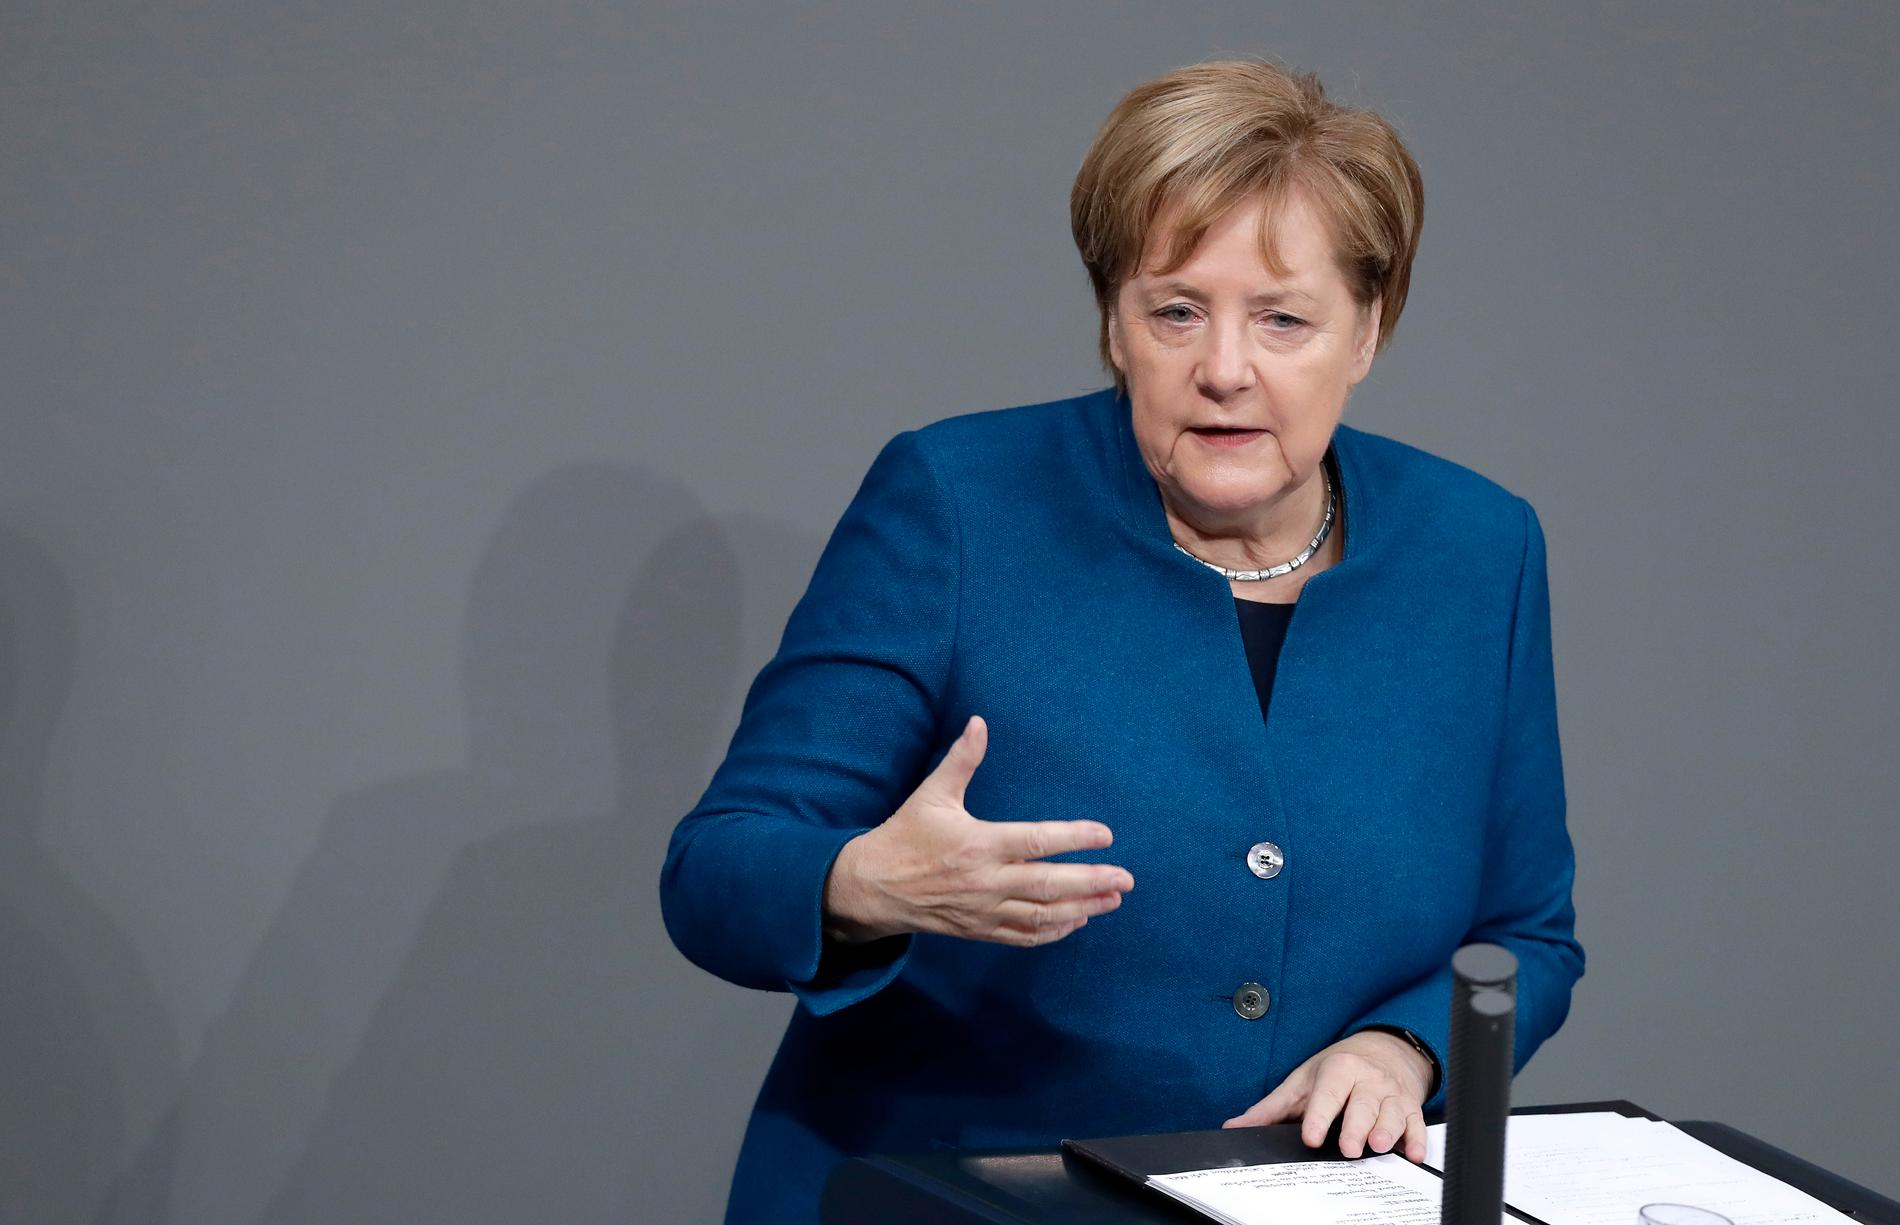 Tyskland säger ja till brexitavtalet, meddelade Angela Merkel vid en budgetdebatt i förbundsdagen.